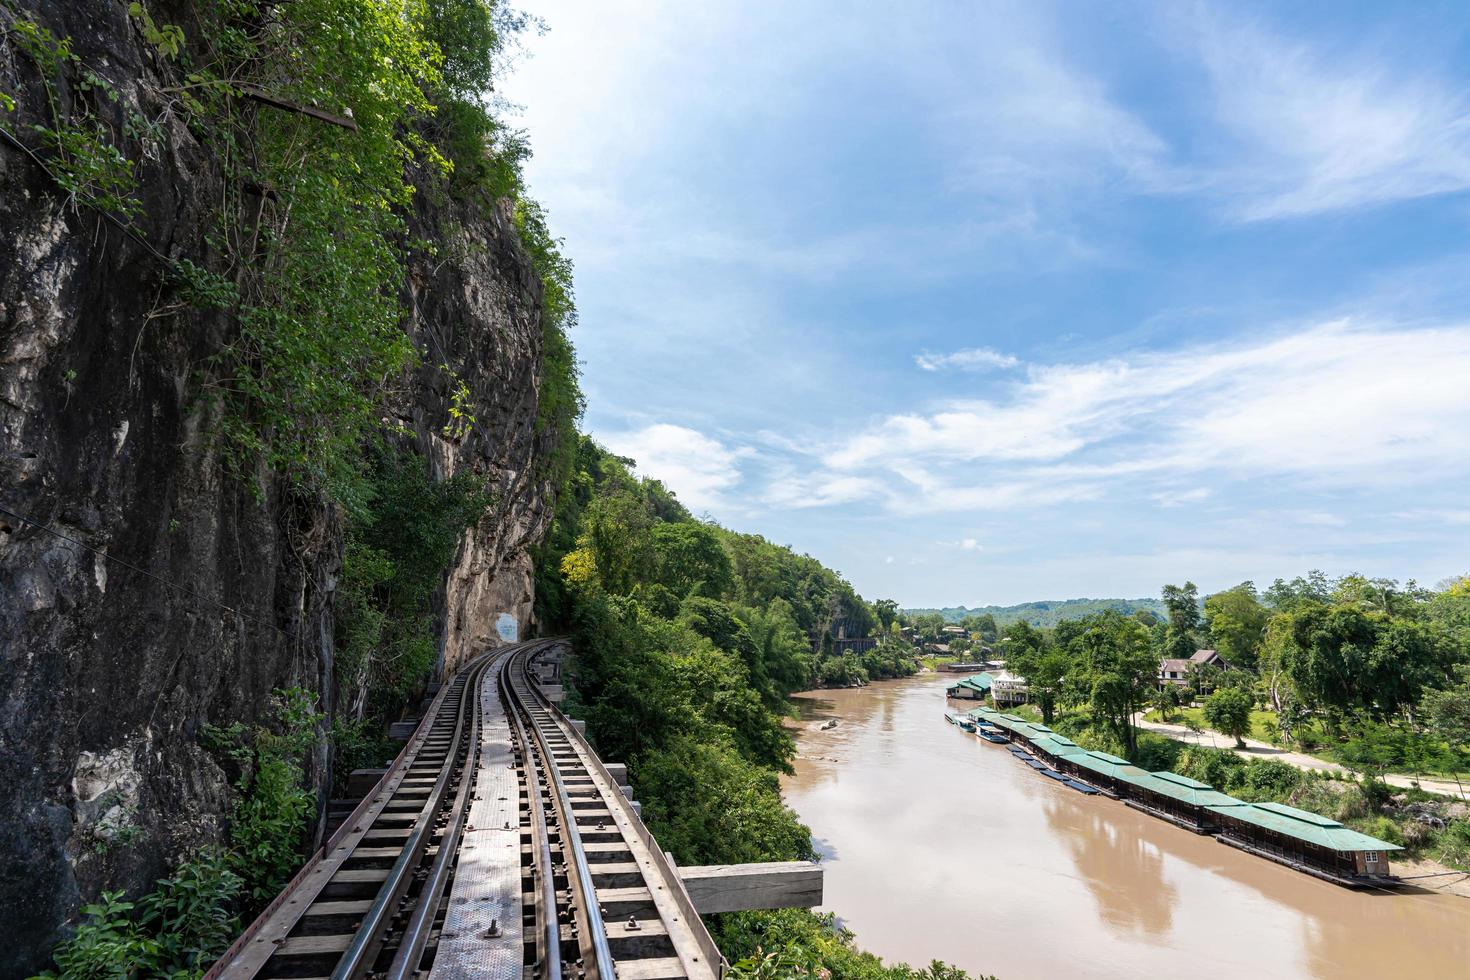 de spoorweg Bij de voet van de berg, De volgende naar de rivier- en blauw lucht , tham krasae, kanchanaburi provincie mijlpaal van Thailand plaats foto